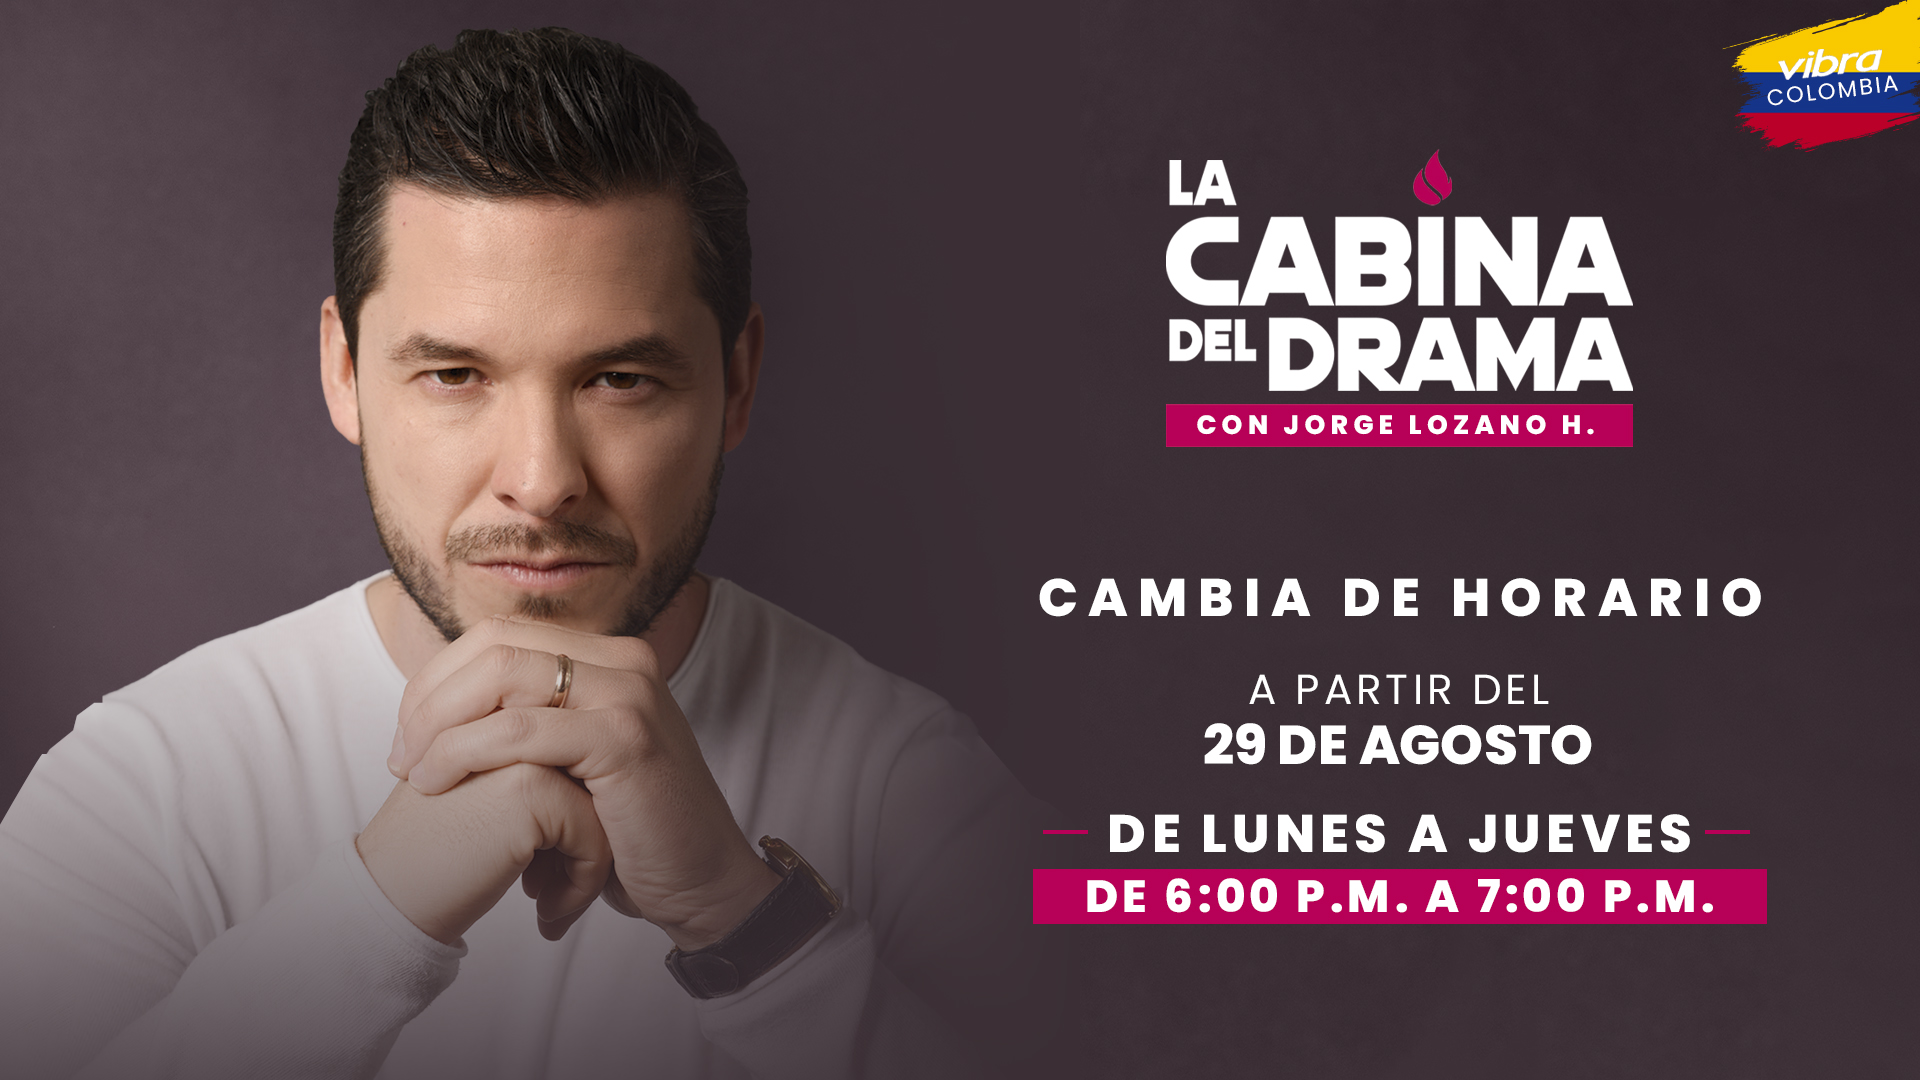 «La Cabina del Drama» en Colombia cambia de horario.